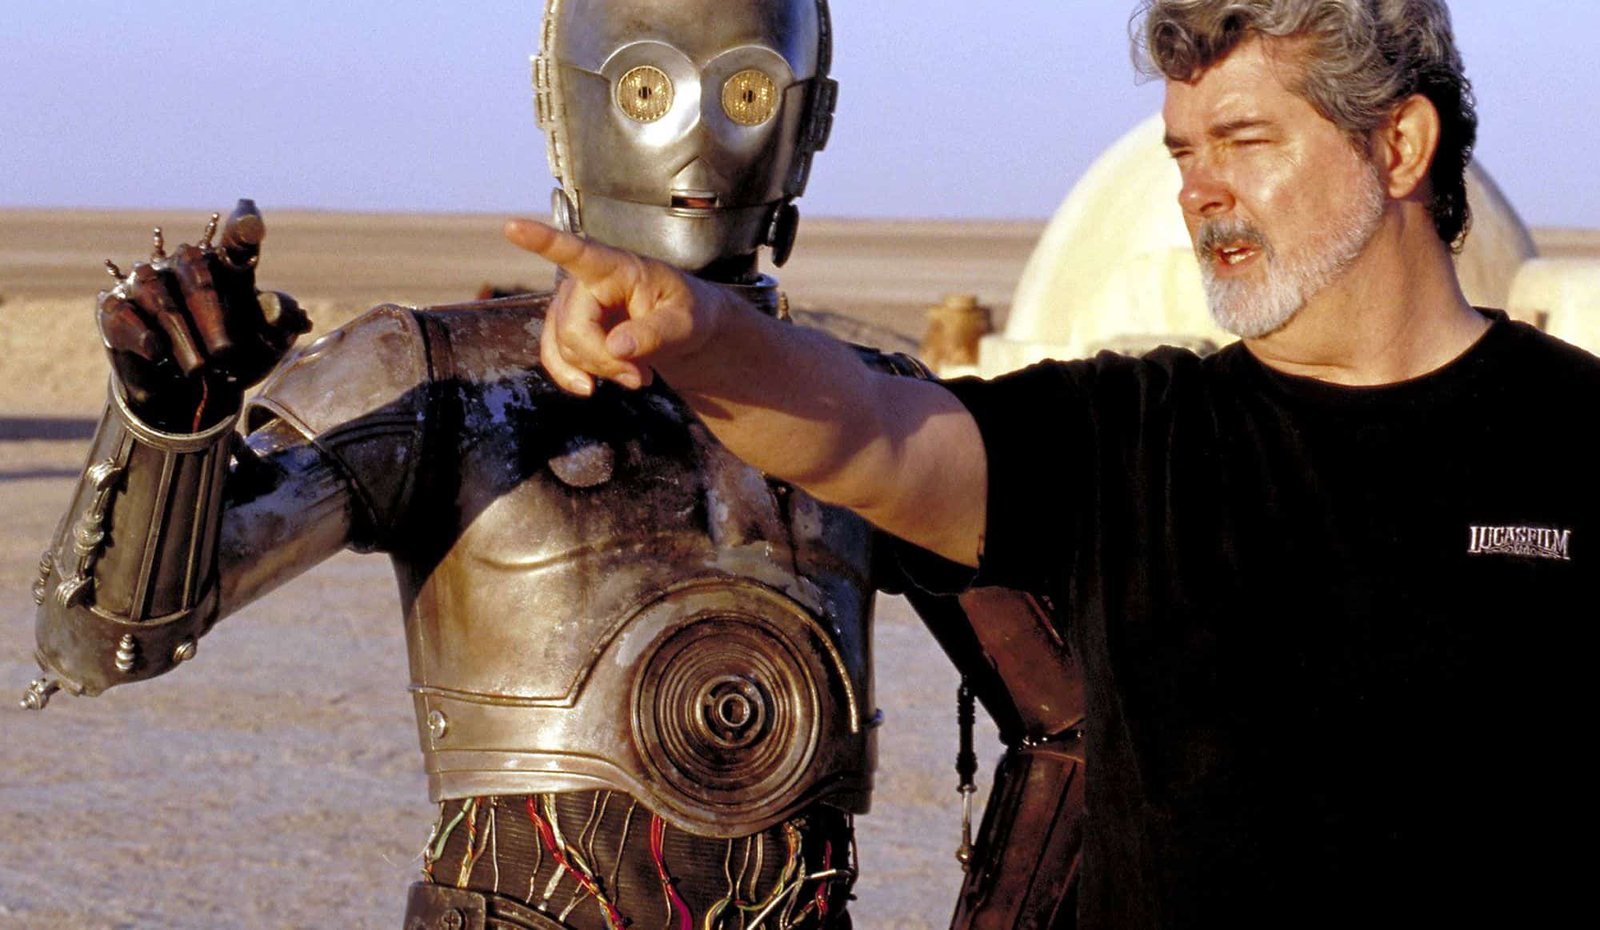 George Lucas, vêtu d'un t-shirt noir, met en scène une scène avec un personnage de robot métallique dans un vaste paysage désertique. Le robot semble conversationnel, la main tendue comme pour faire valoir un point.